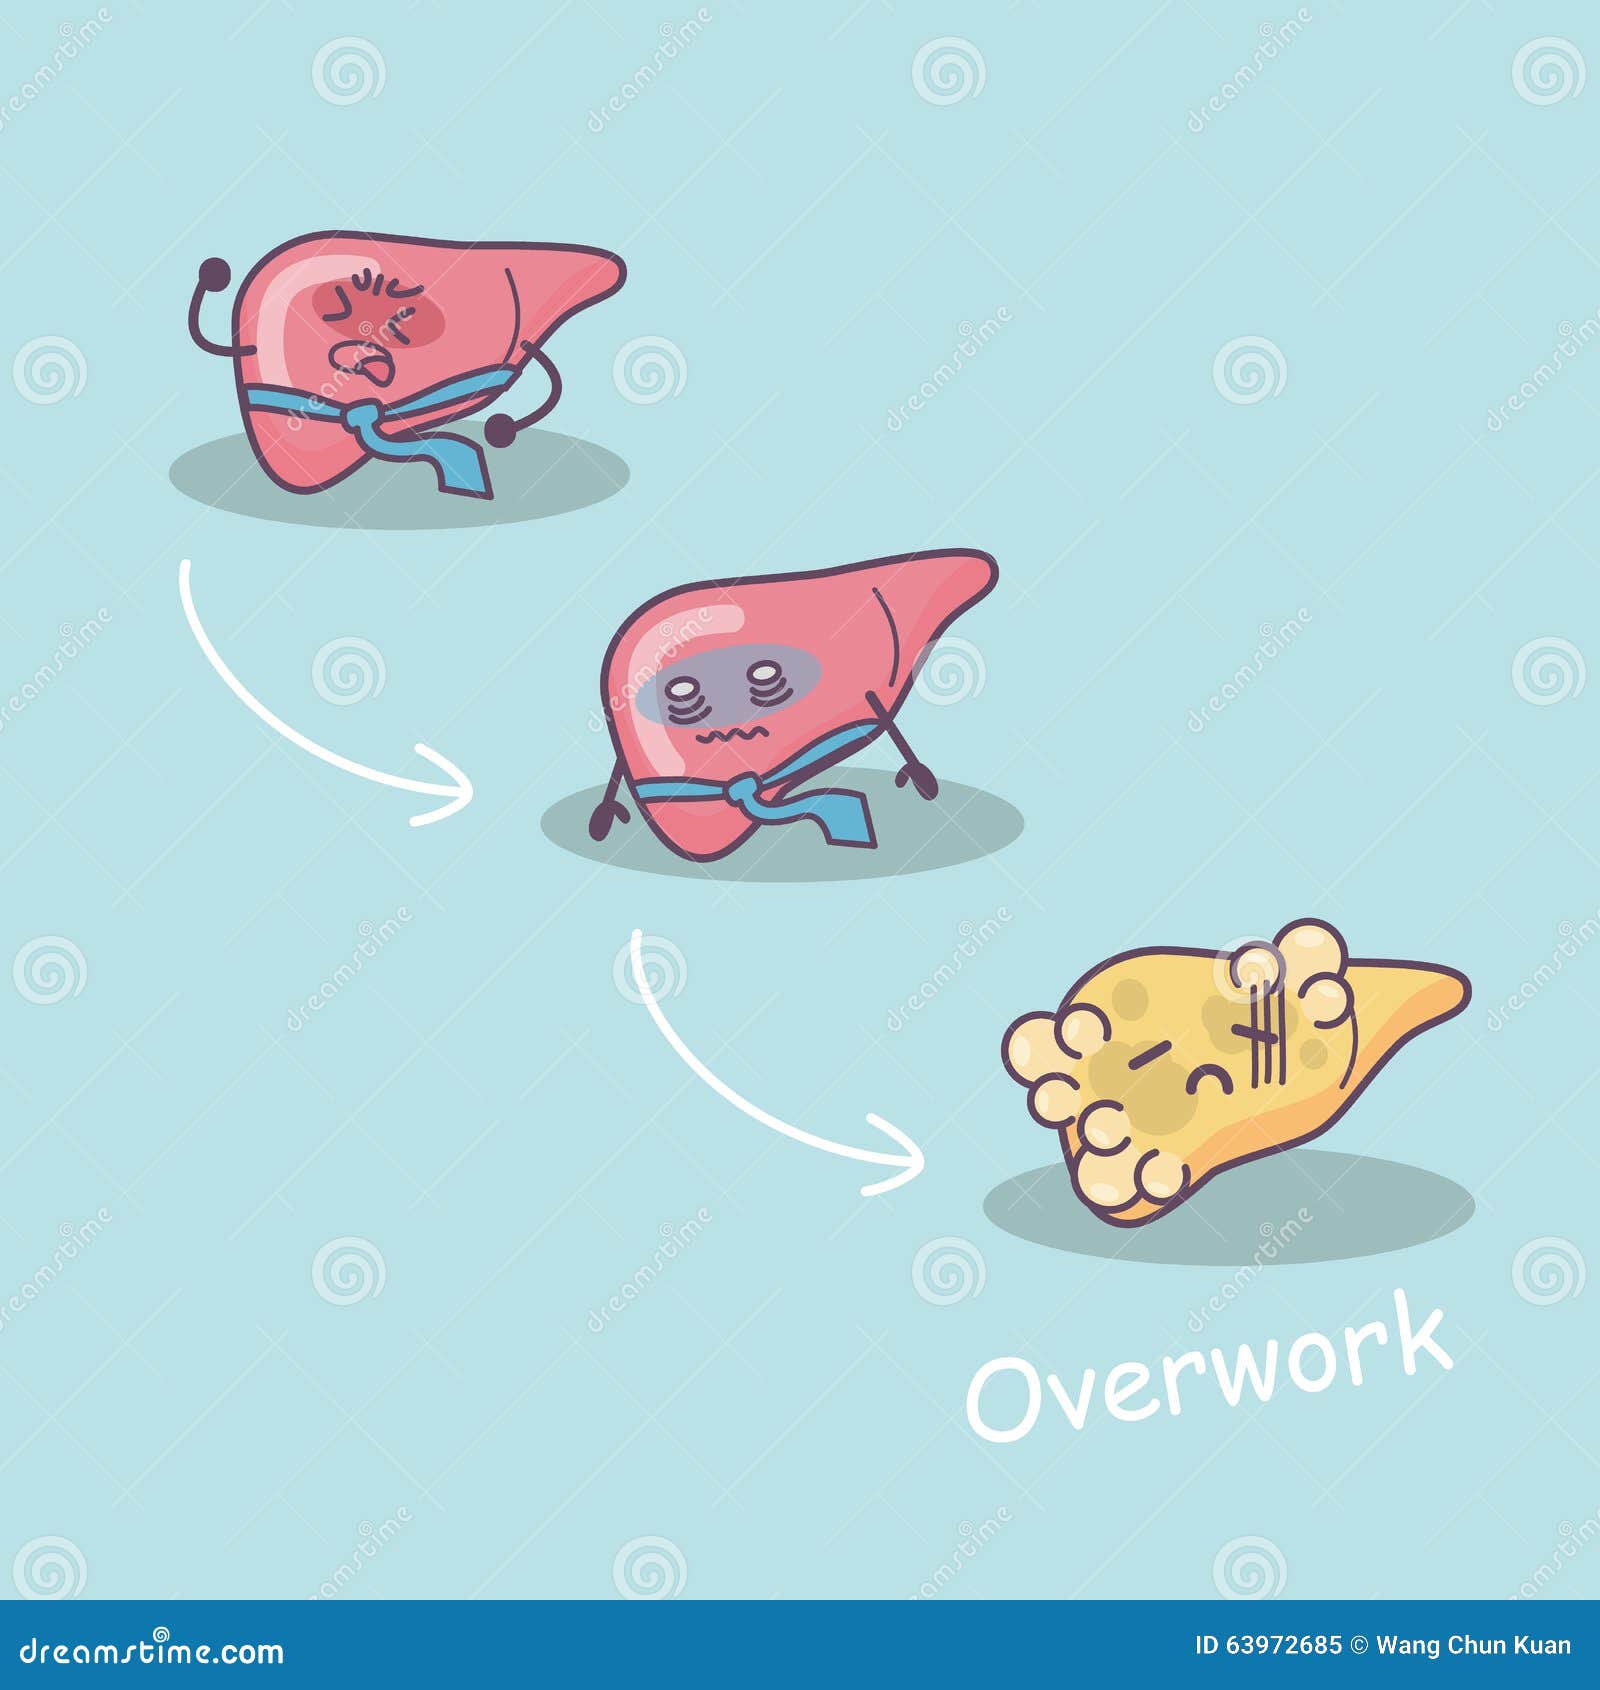 overwork damage liver